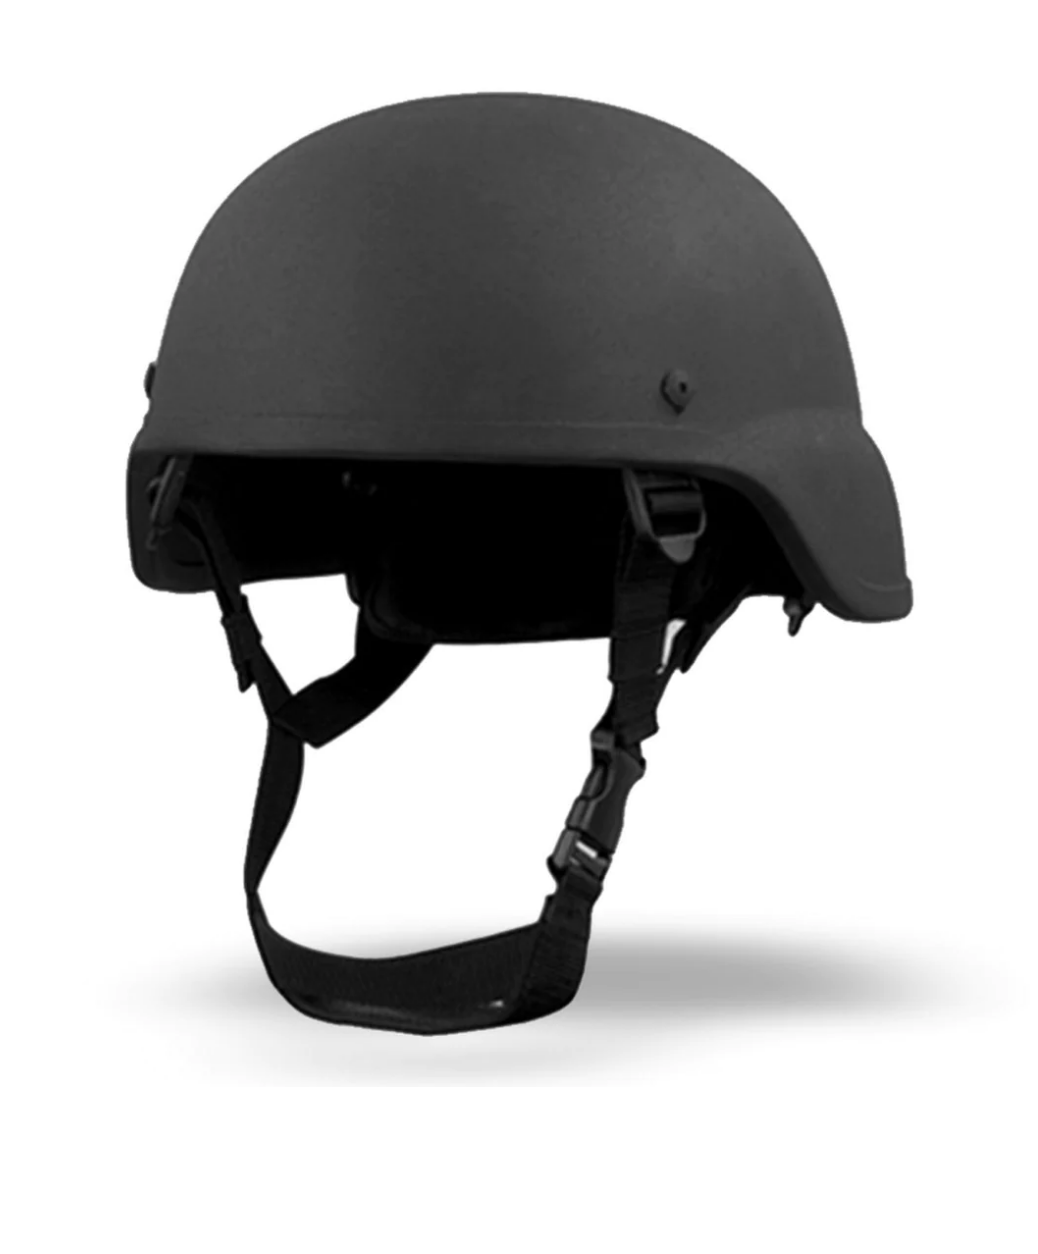 Legacy PASGT Ballistic Helmet Level IIIA